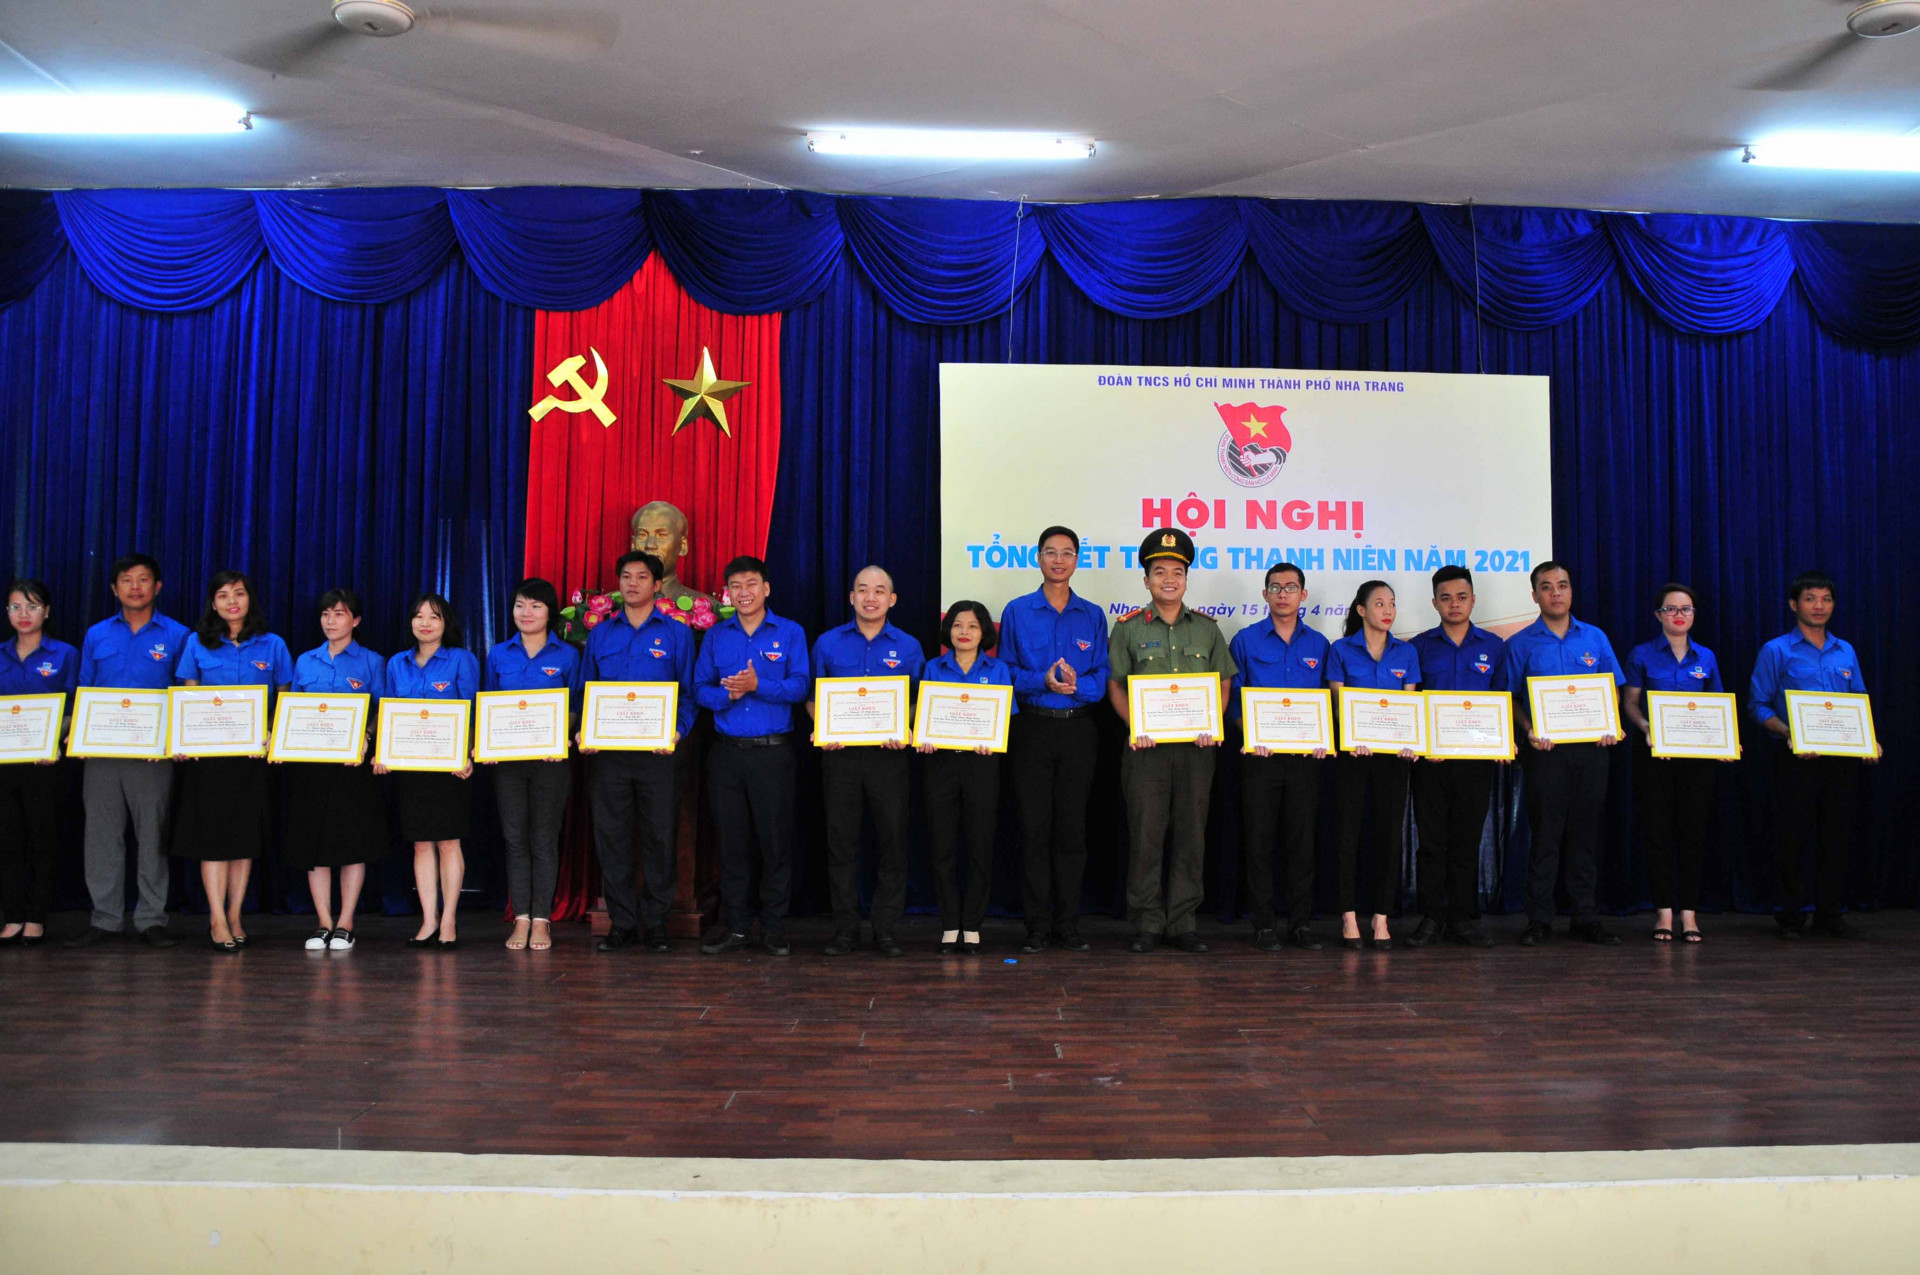 Lãnh đạo Thành đoàn Nha Trang trao khen thưởng của UBND thành phố cho các cá nhân xuất sắc